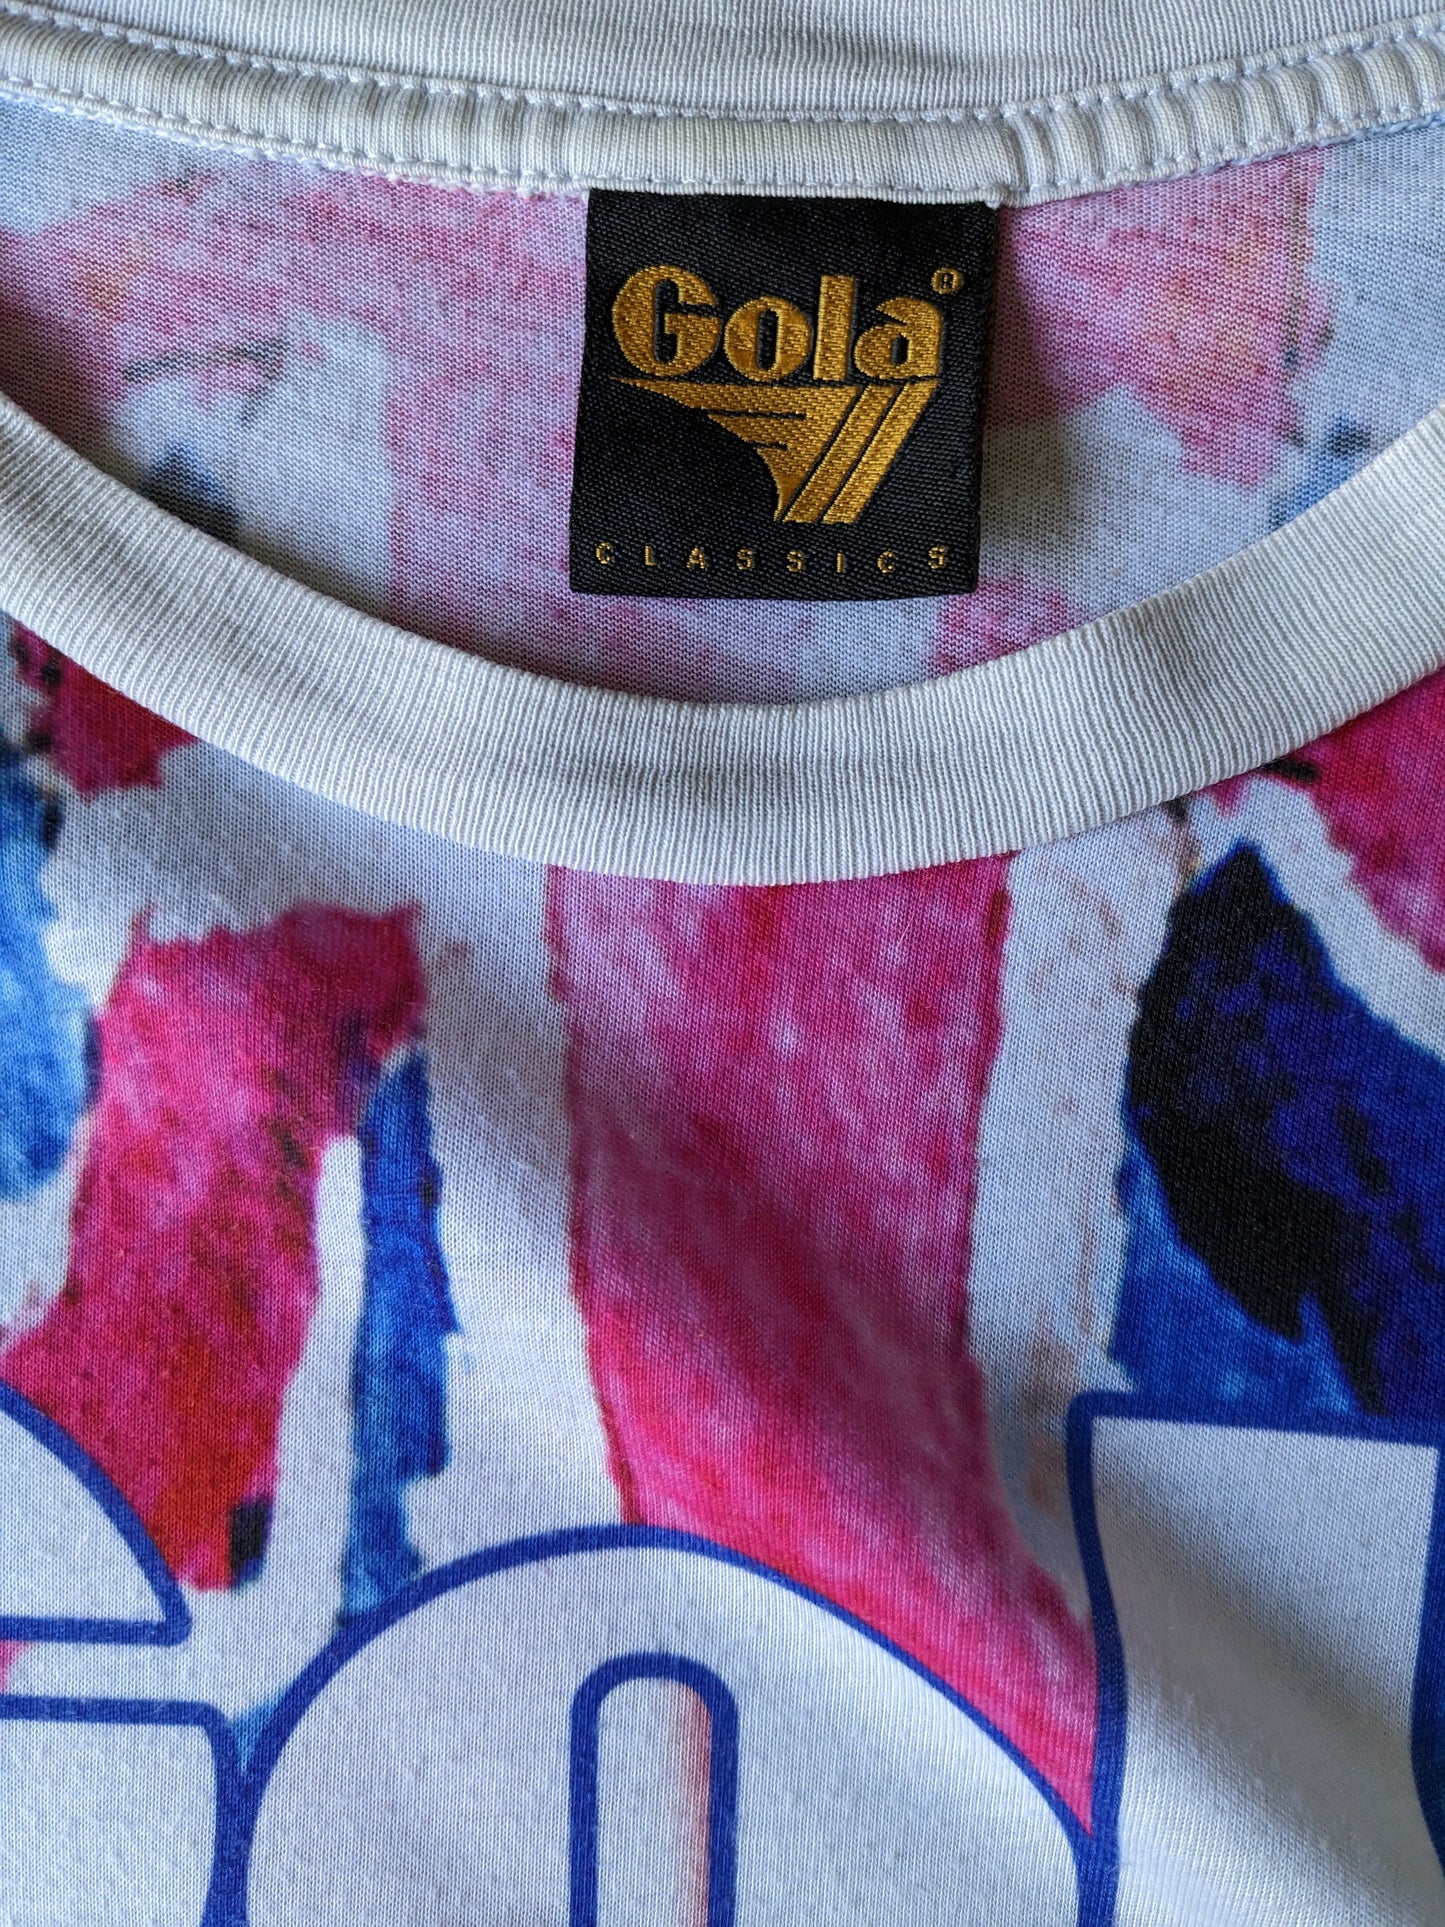 Camisa de Gola Classics. Estampado rosa blanco azul. Talla M.